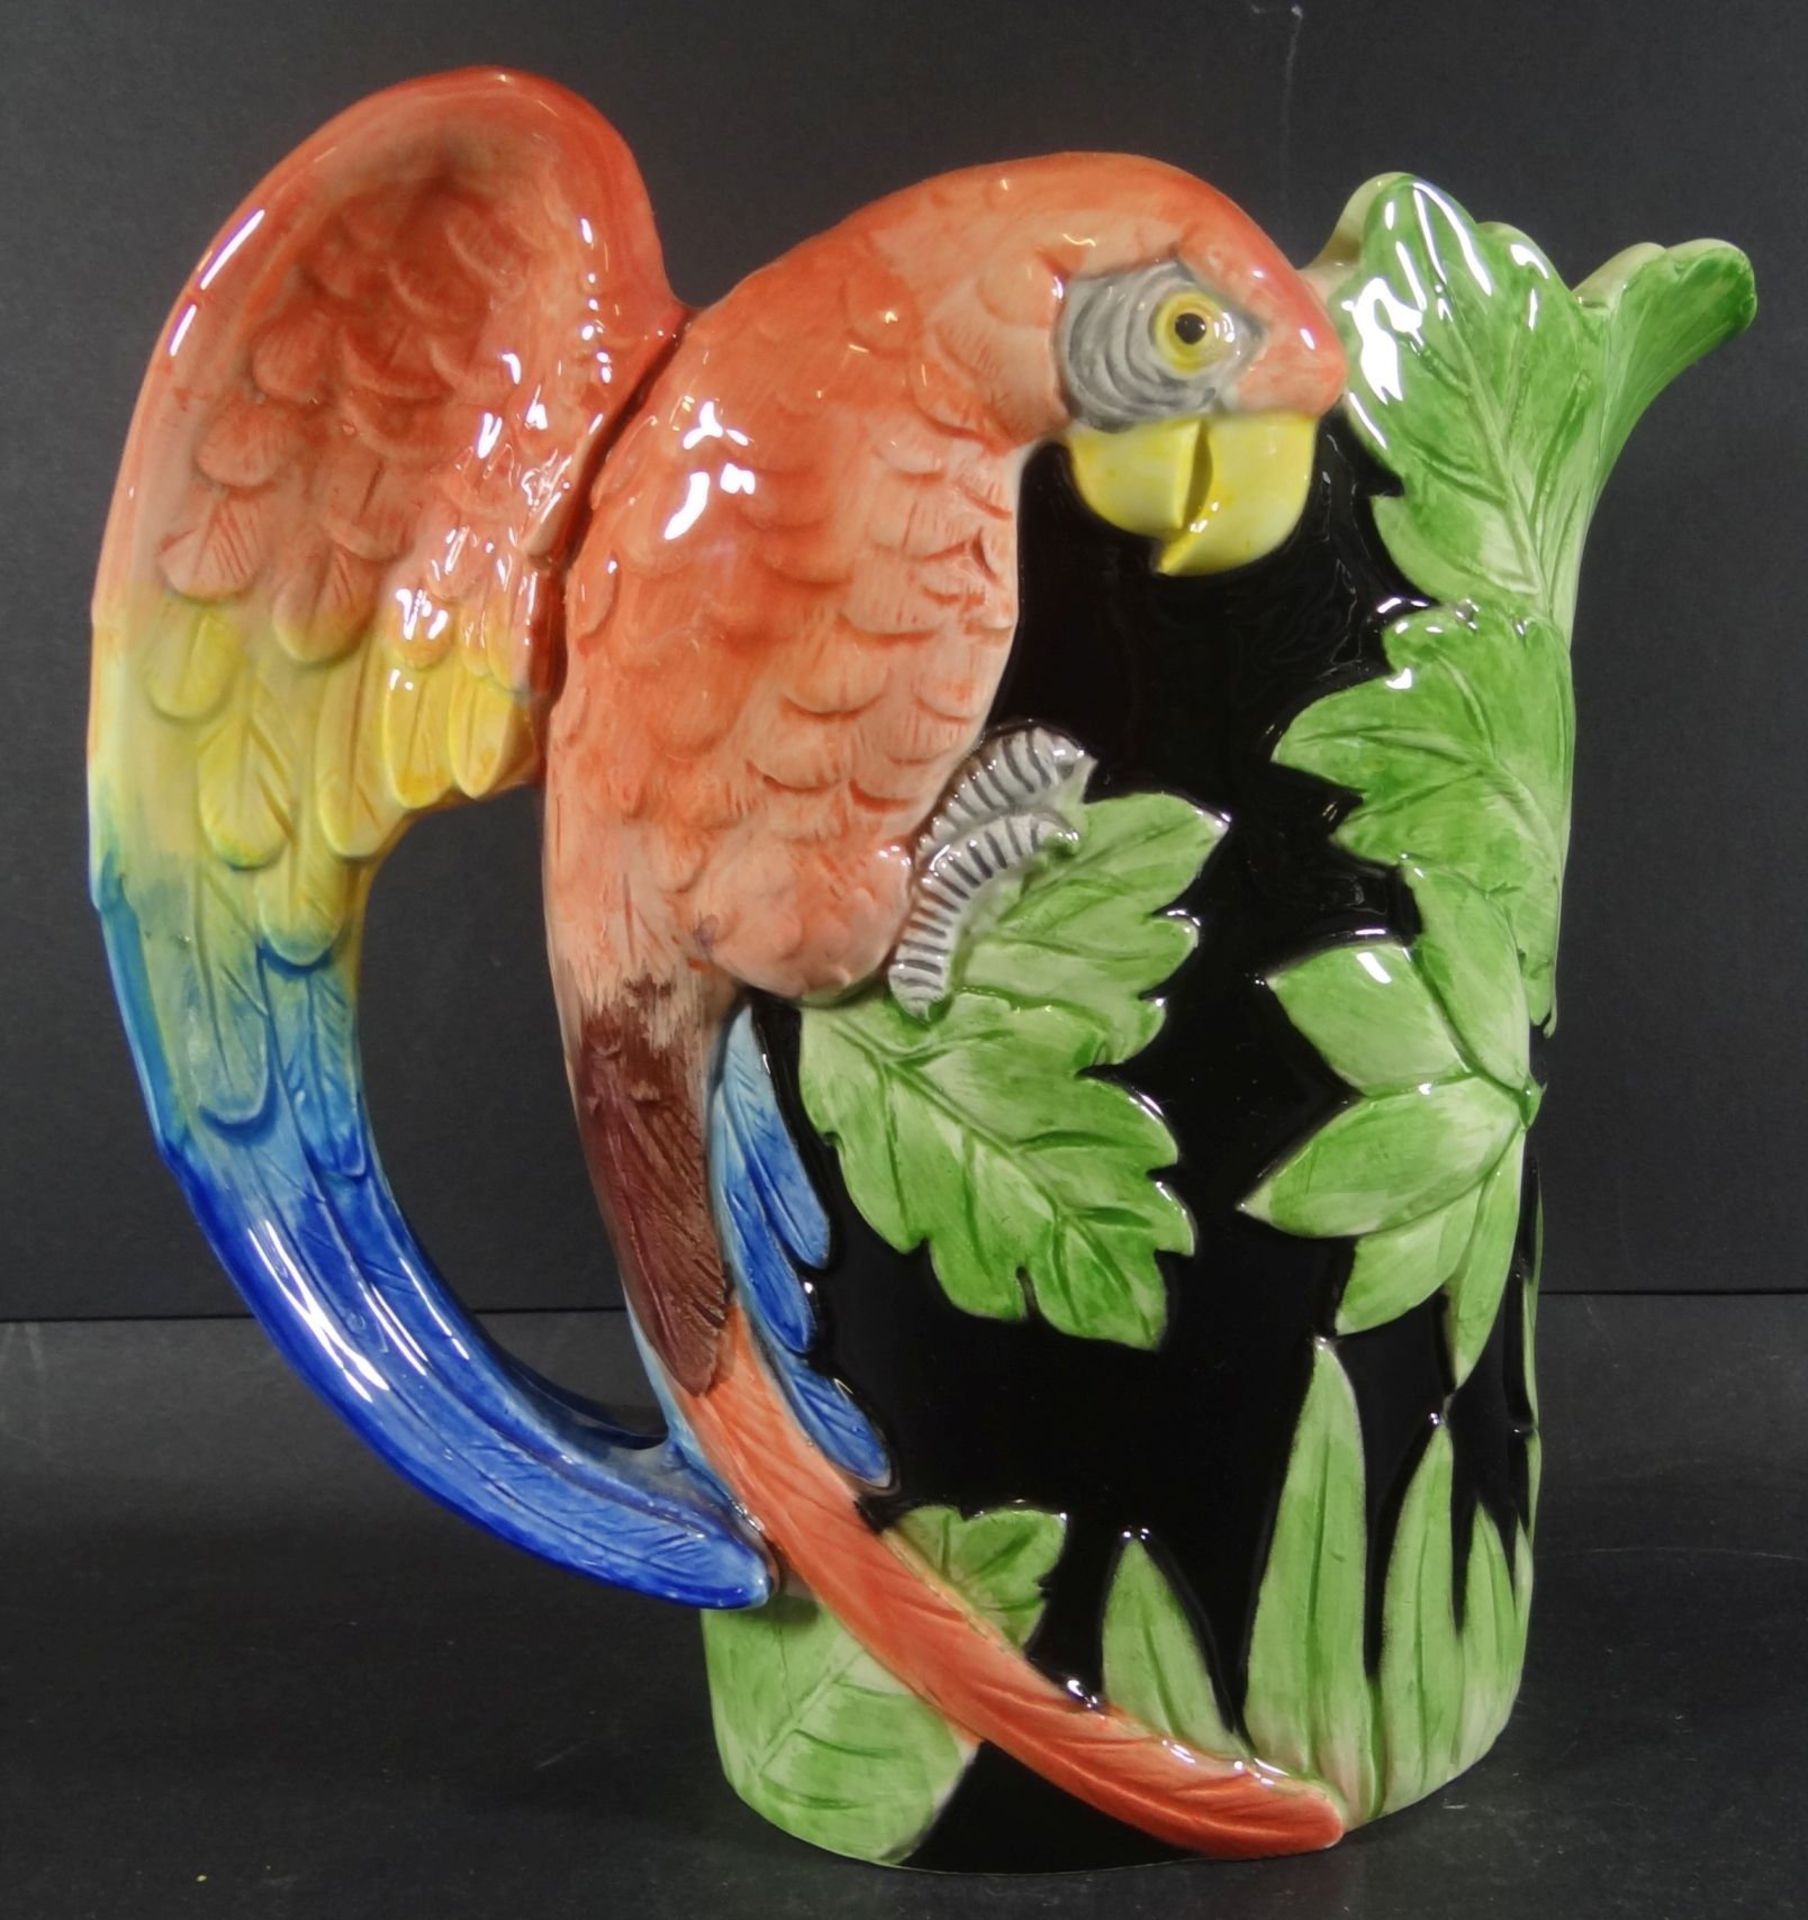 grosser Majolika-Saftkrug mit plast. Papagei, H-23 cm, gut erhalten, gemarkt "FF 1986" - Bild 4 aus 6